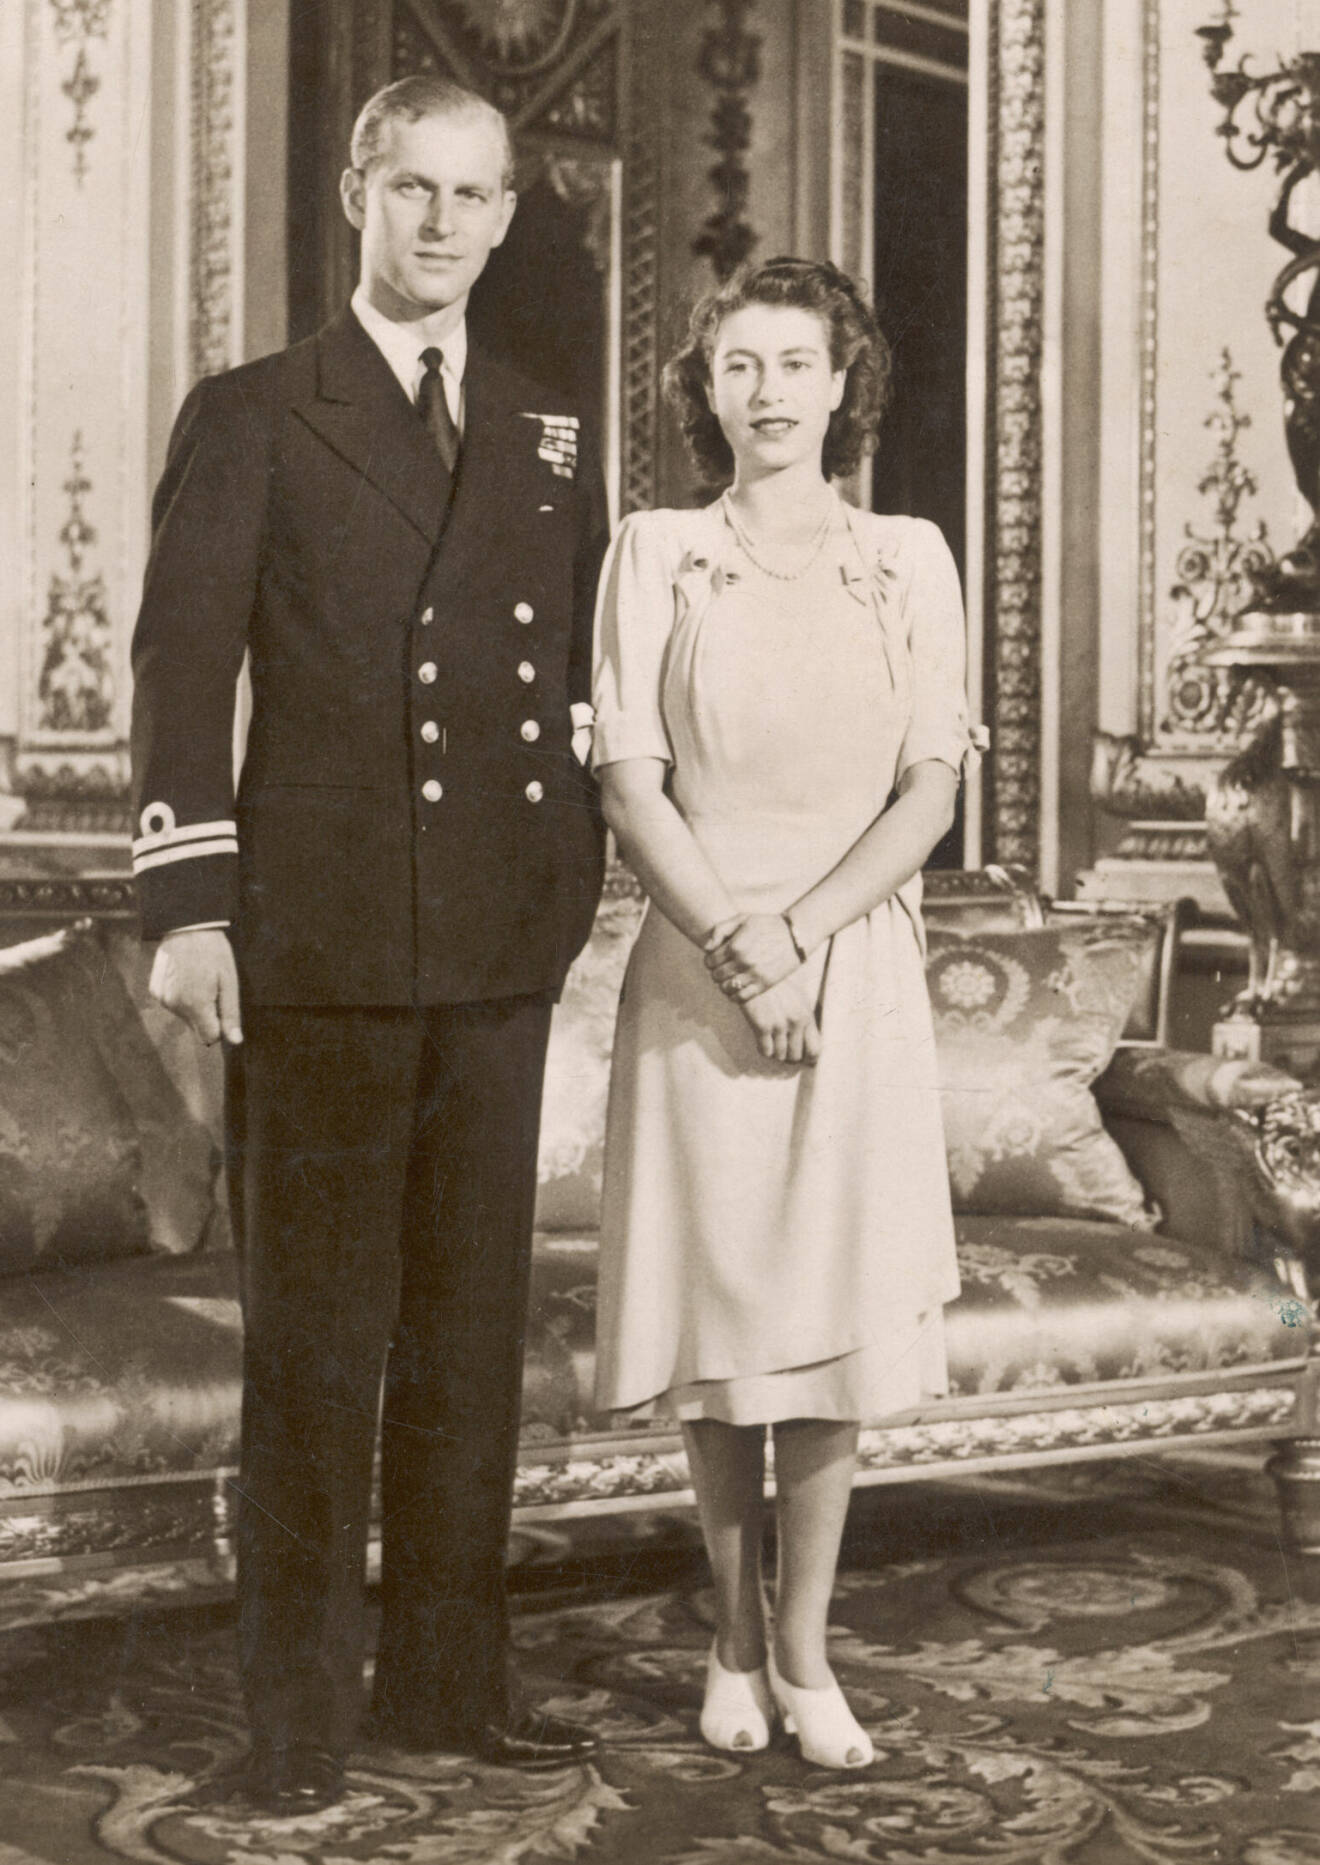 Den blivande drottning Elizabeth II tillsammans med sin blivande man prins Philip 1947.